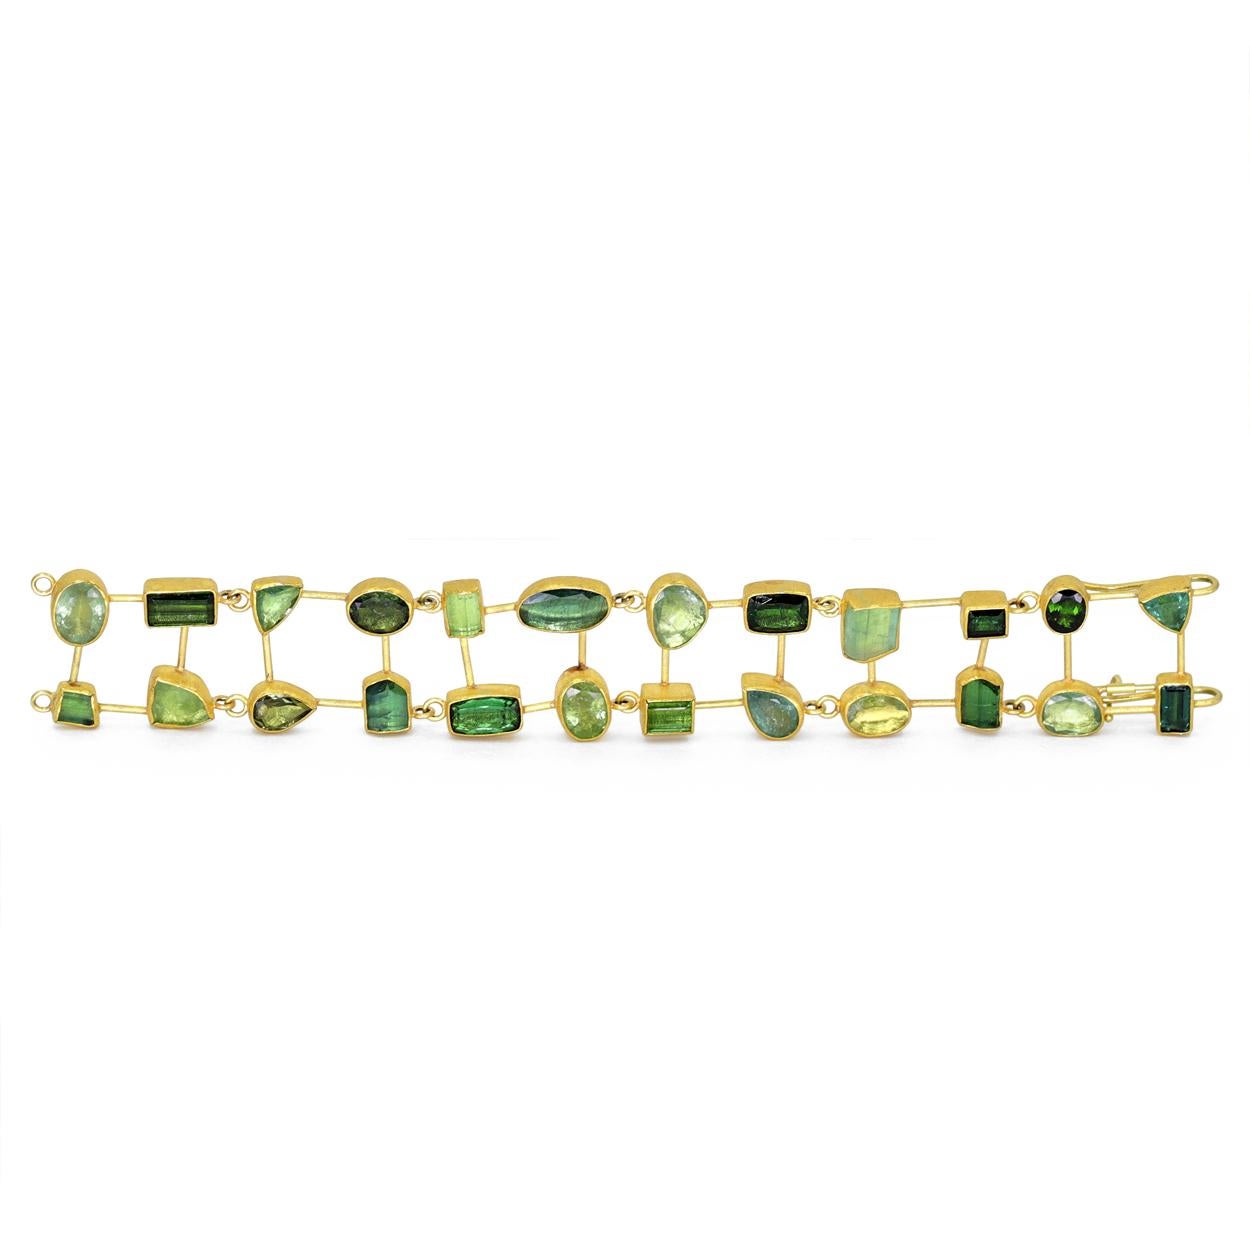 Un chef-d'œuvre unique pour le poignet, créé par la célèbre joaillière Petra Class, entièrement réalisé à la main en or jaune 22 carats, avec 54,0 carats de tourmaline allant du vert profond au bleu doux, à facettes ou brutes. Chaque pierre